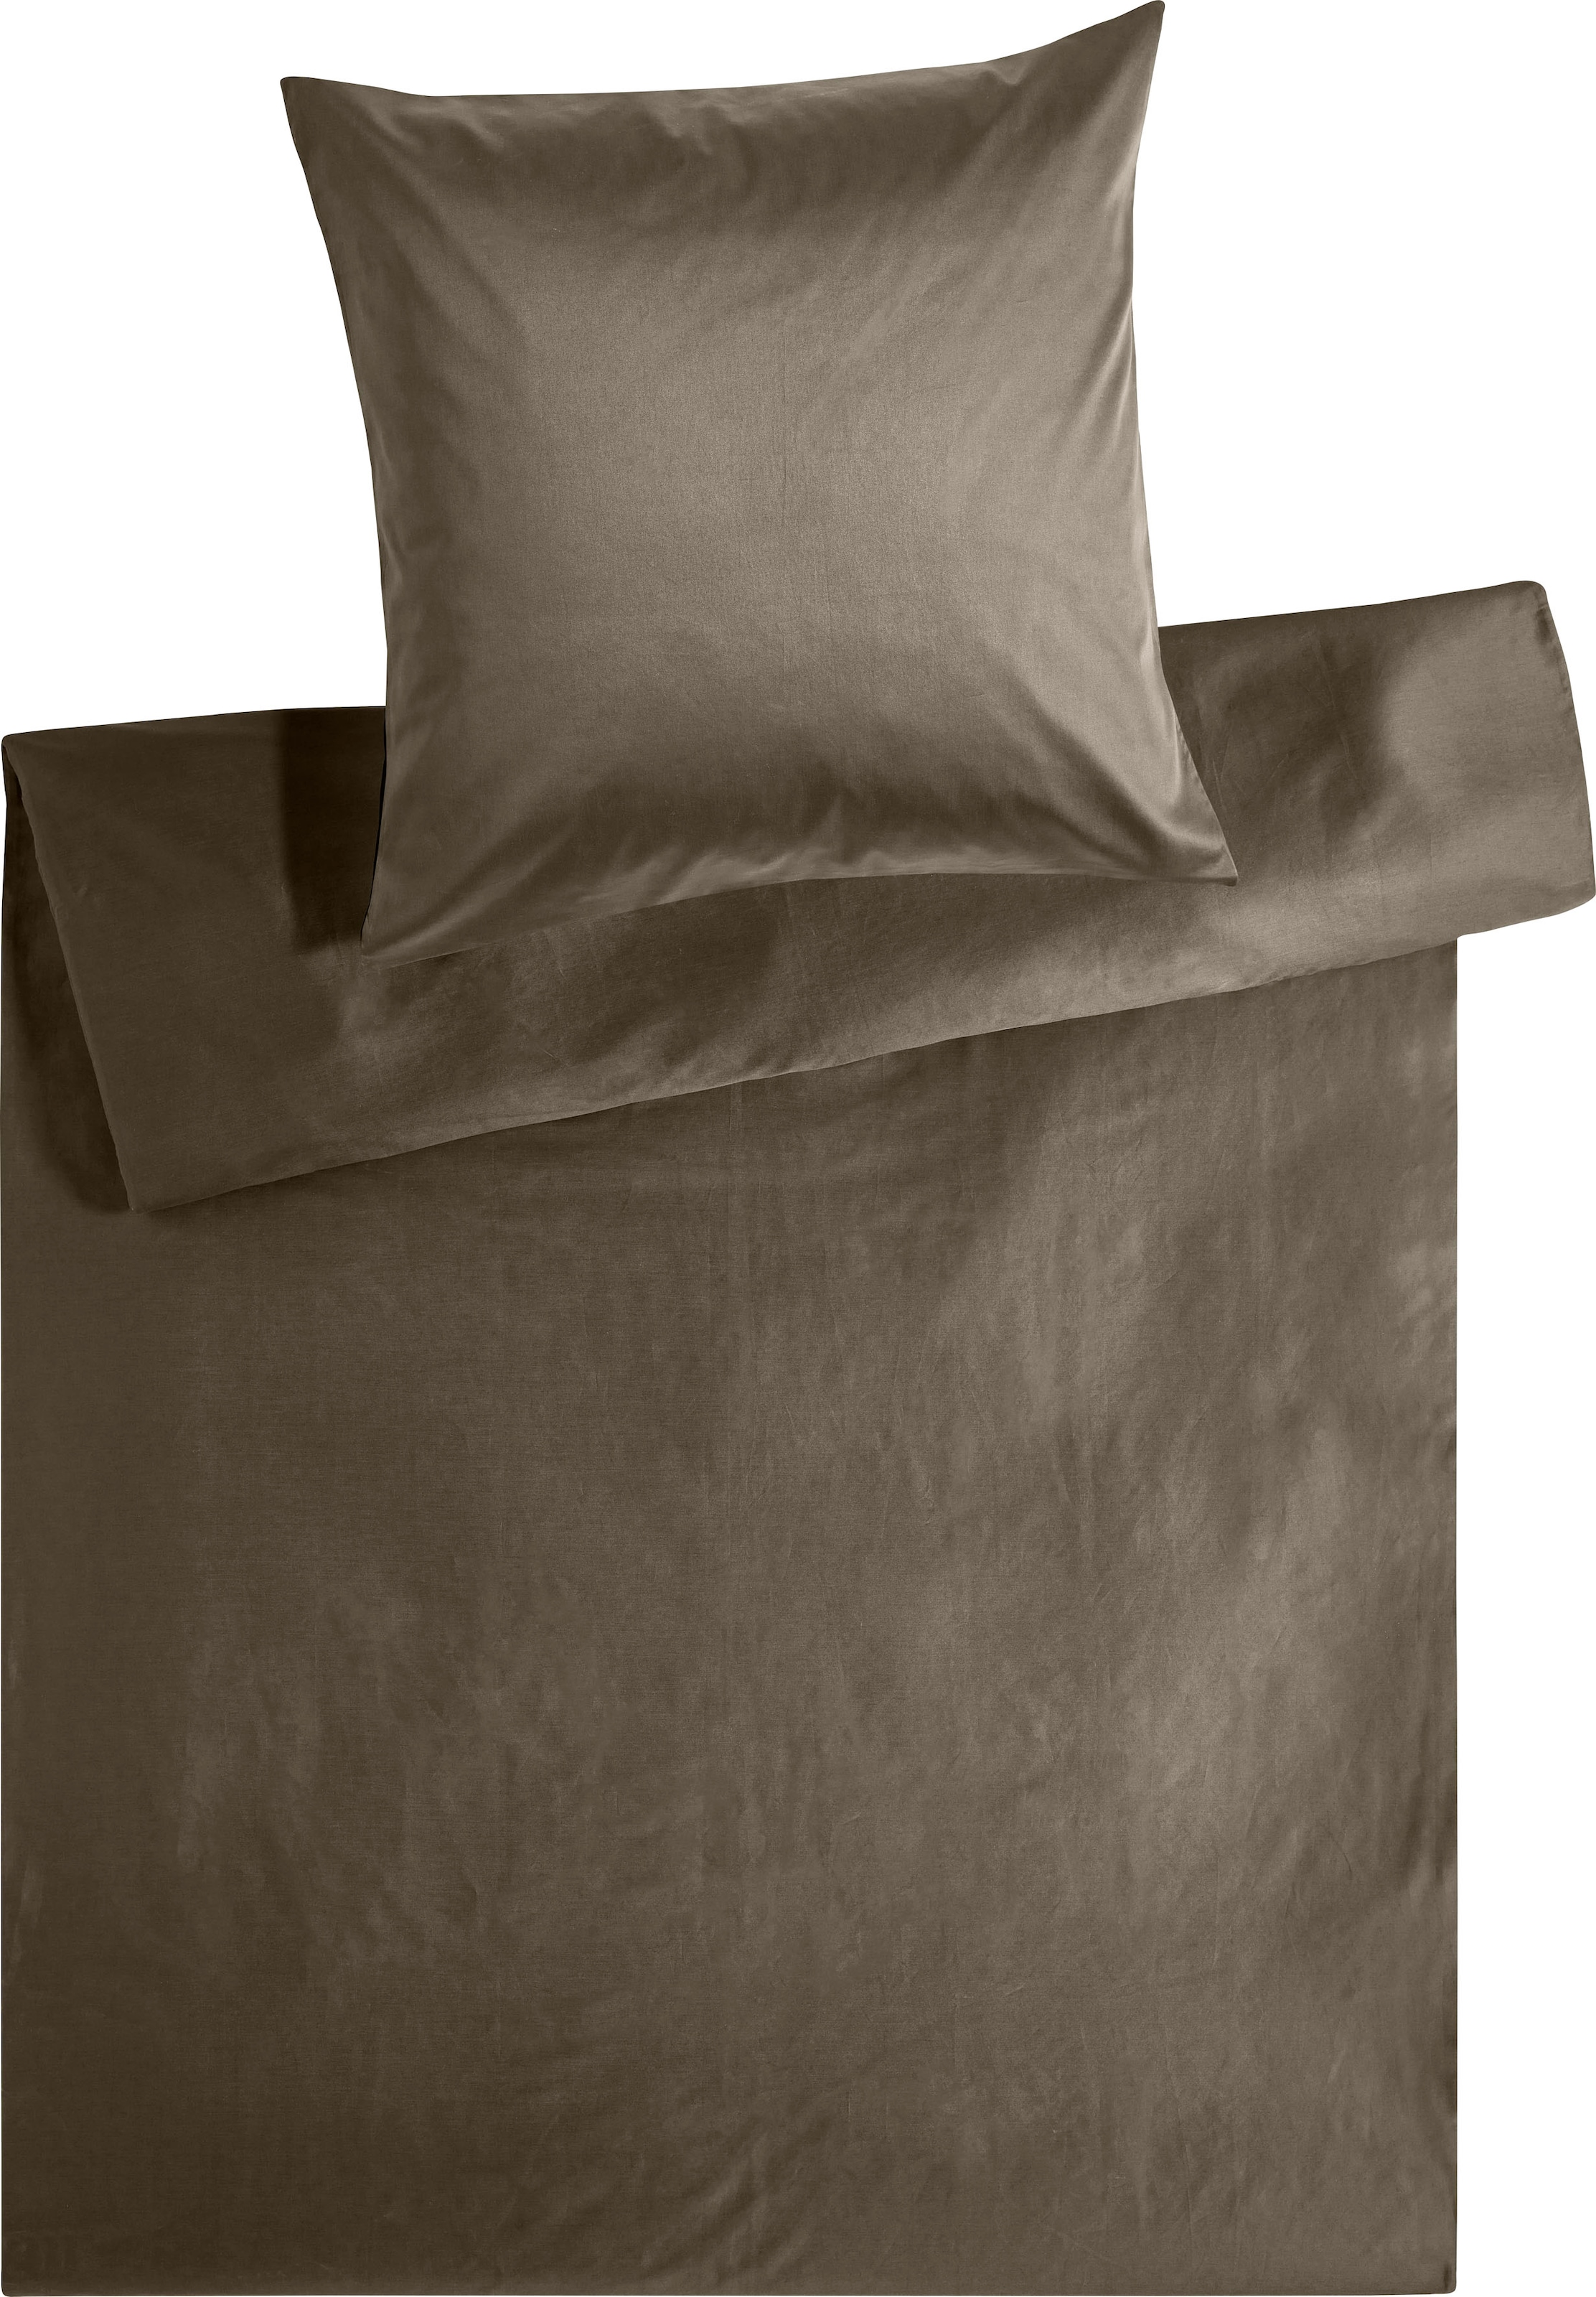 Kneer Bettwäsche »Edel-Satin Uni in 135x200, 155x220 oder 200x200 cm«, (2 tlg.), Bettwäsche aus Baumwolle in Satin-Qualität, unifarbene Bettwäsche